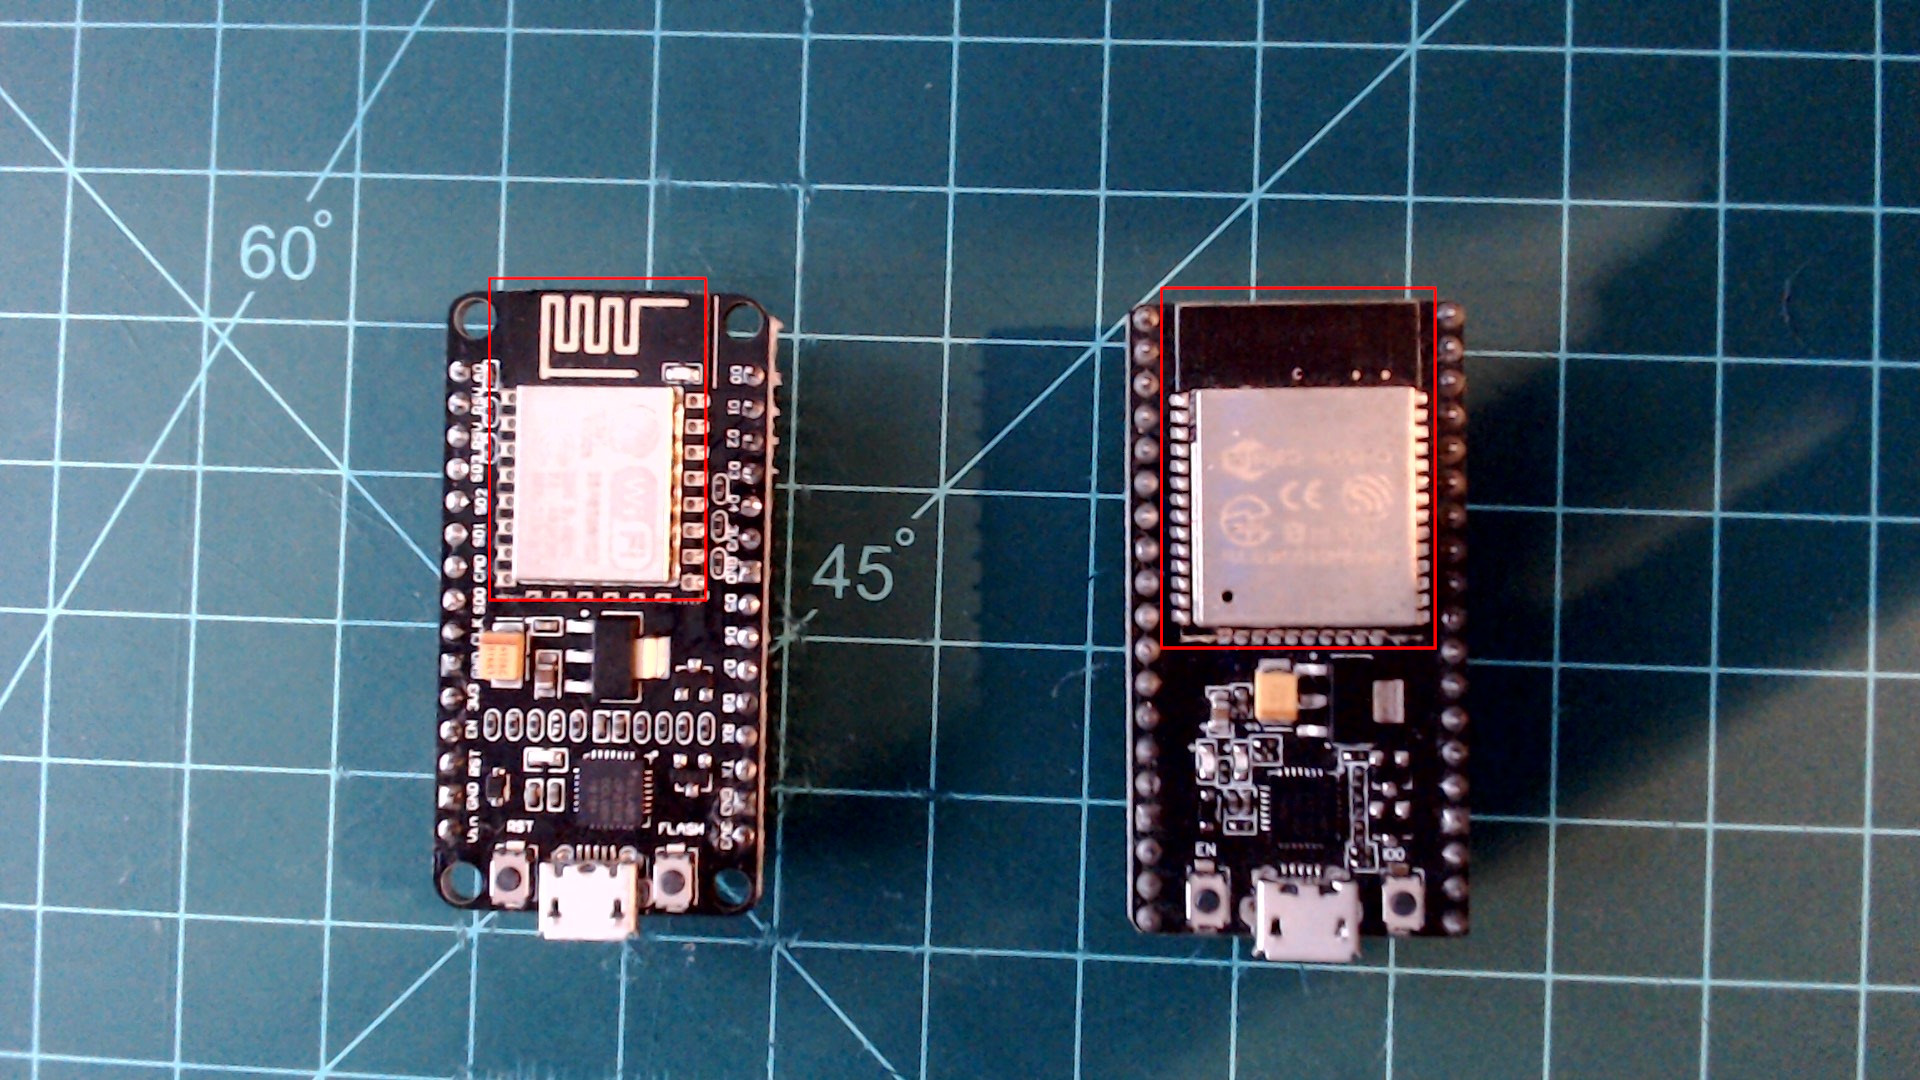 Left: ESP8266 NodeMCU development board. Right: ESP32 NodeMCU development board.